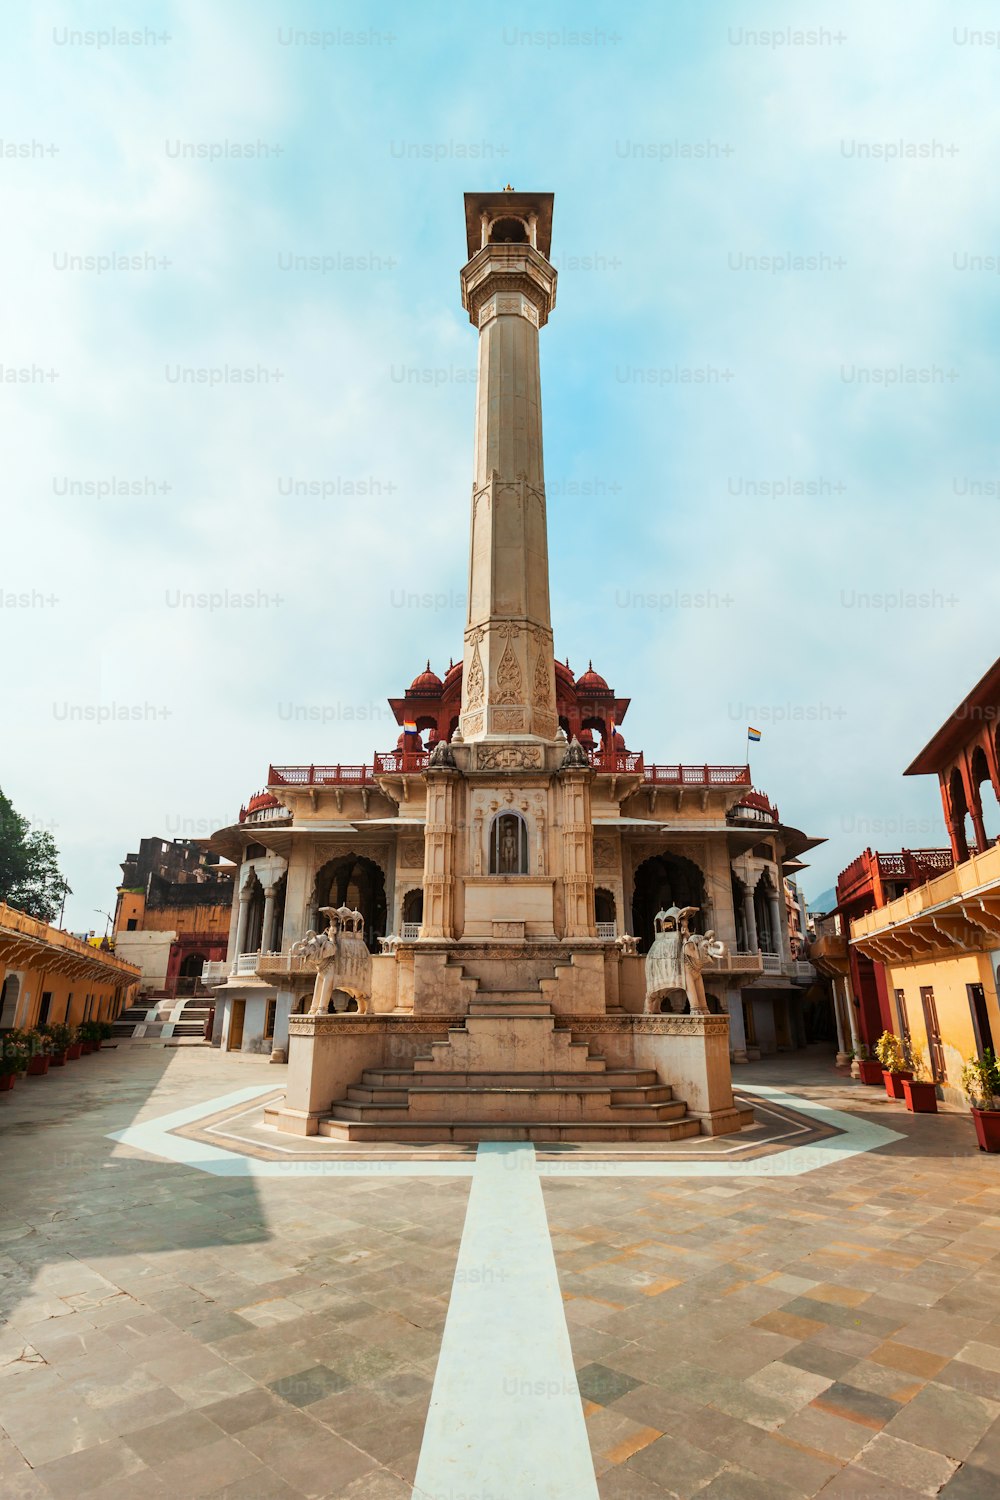 ディガンバージャイン寺院またはソニジキナシヤンは、インドのラジャスタン州のアジメール市にある主要なジャイナ教寺院です